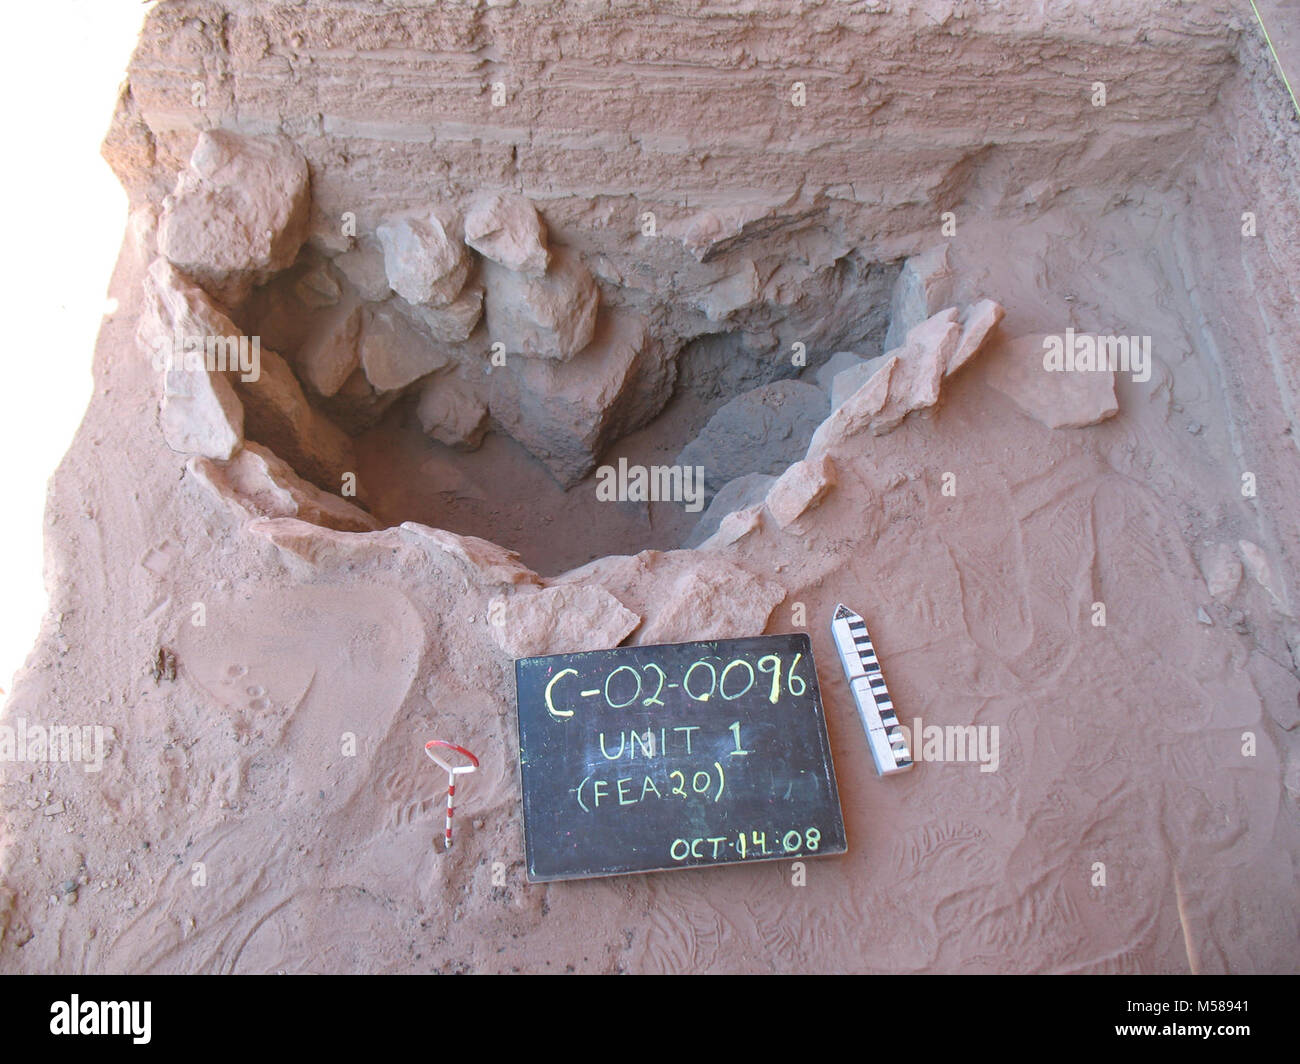 Grand Arqueología IMG. El Parque Nacional del Gran Cañón: Este gran fogón  de losa se excavó en Axhandle alcoba. Datación con carbono 14 indica que se  utilizan entre 430 - 620 E.C. (